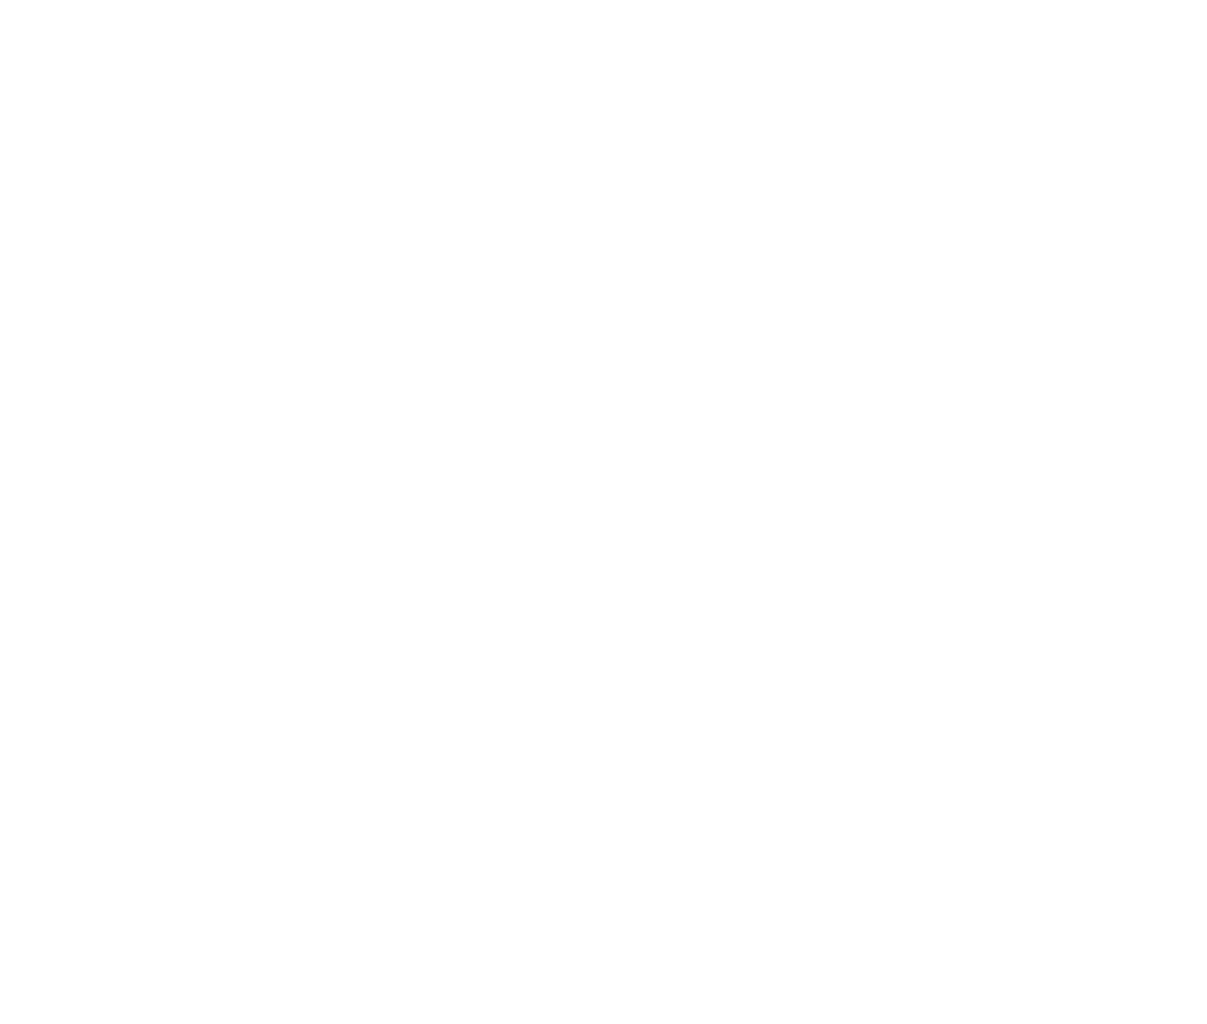 United Nations Emblem Logo Transparent Image